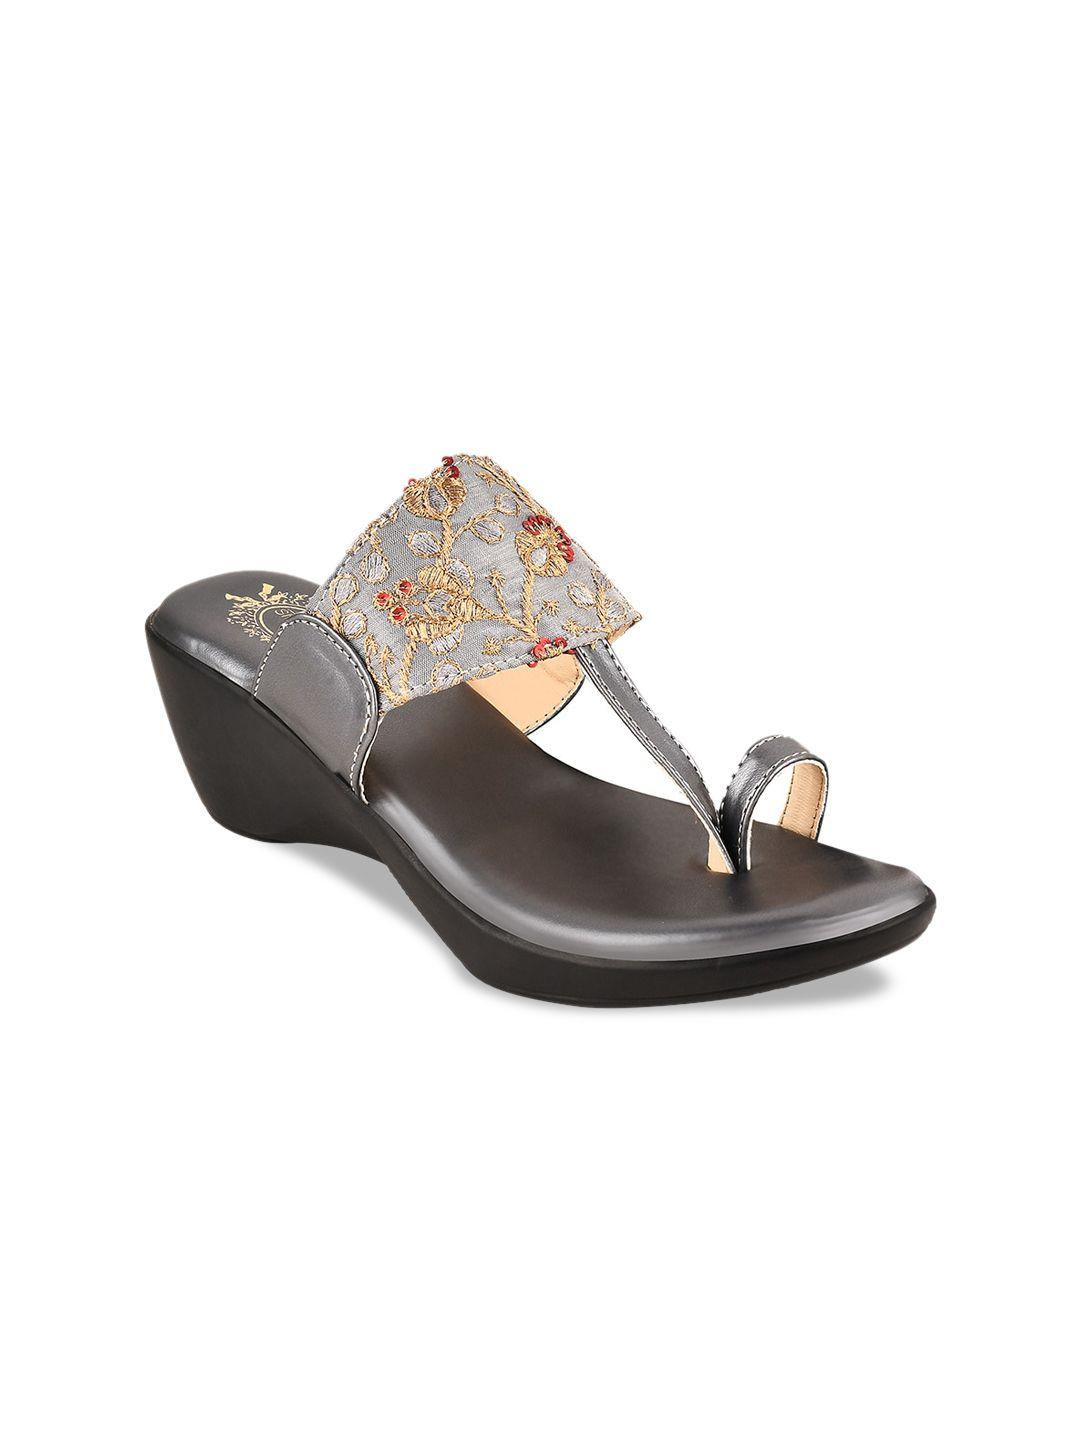 shoetopia girls embellished wedge heels